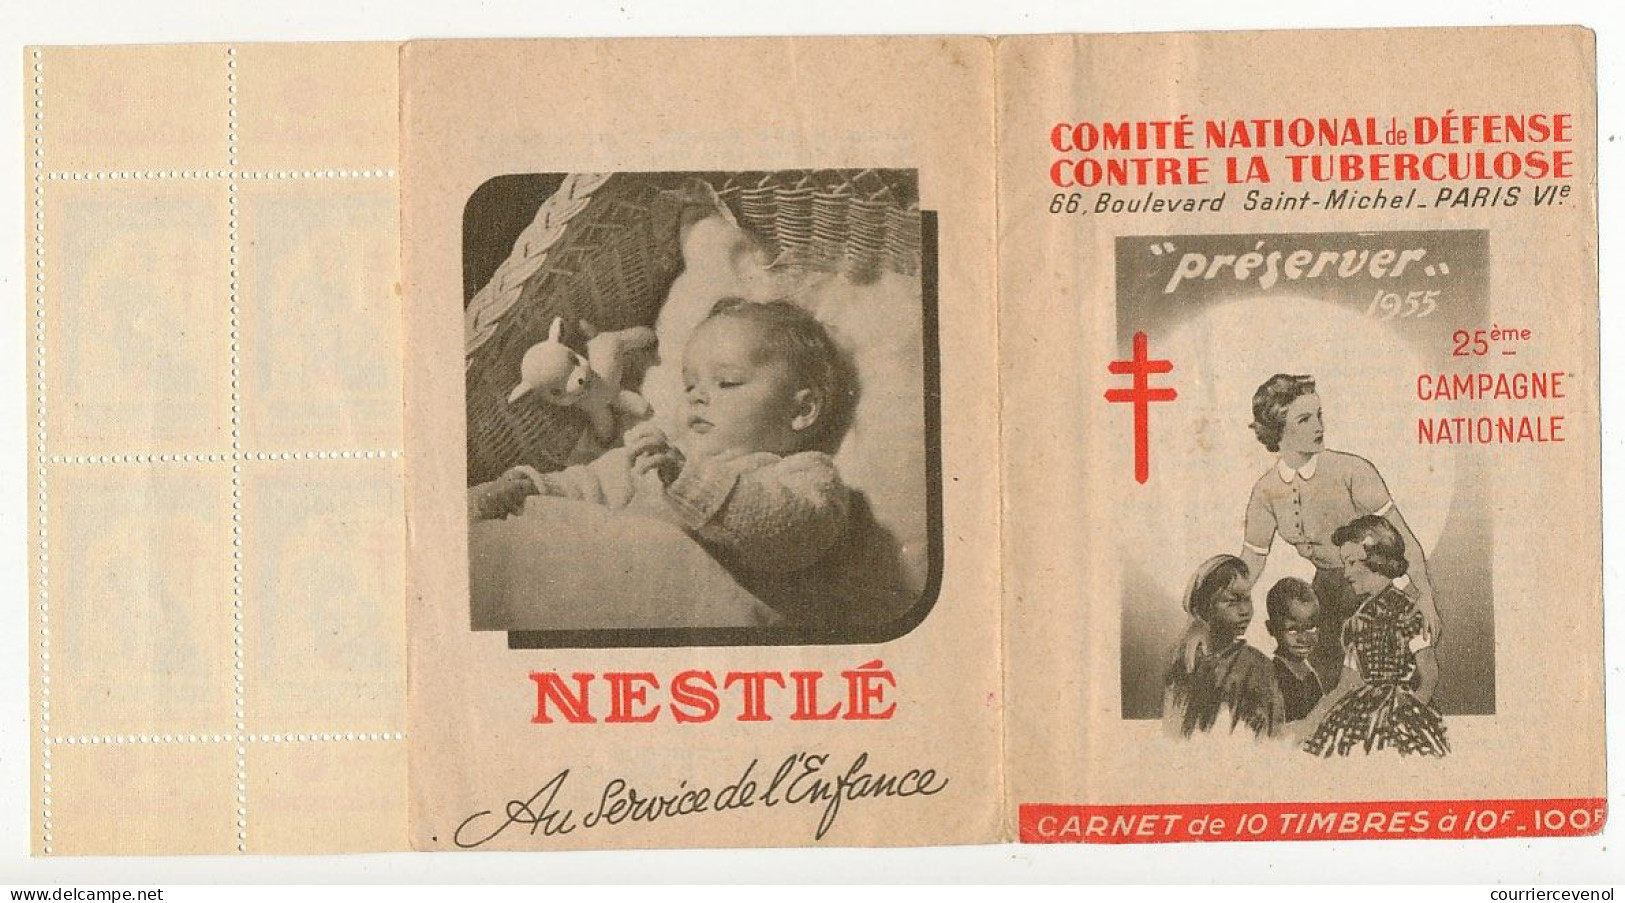 FRANCE - Carnet De 10 Vignettes Antituberculeuses 1955 - "Préserver" - Tegen Tuberculose